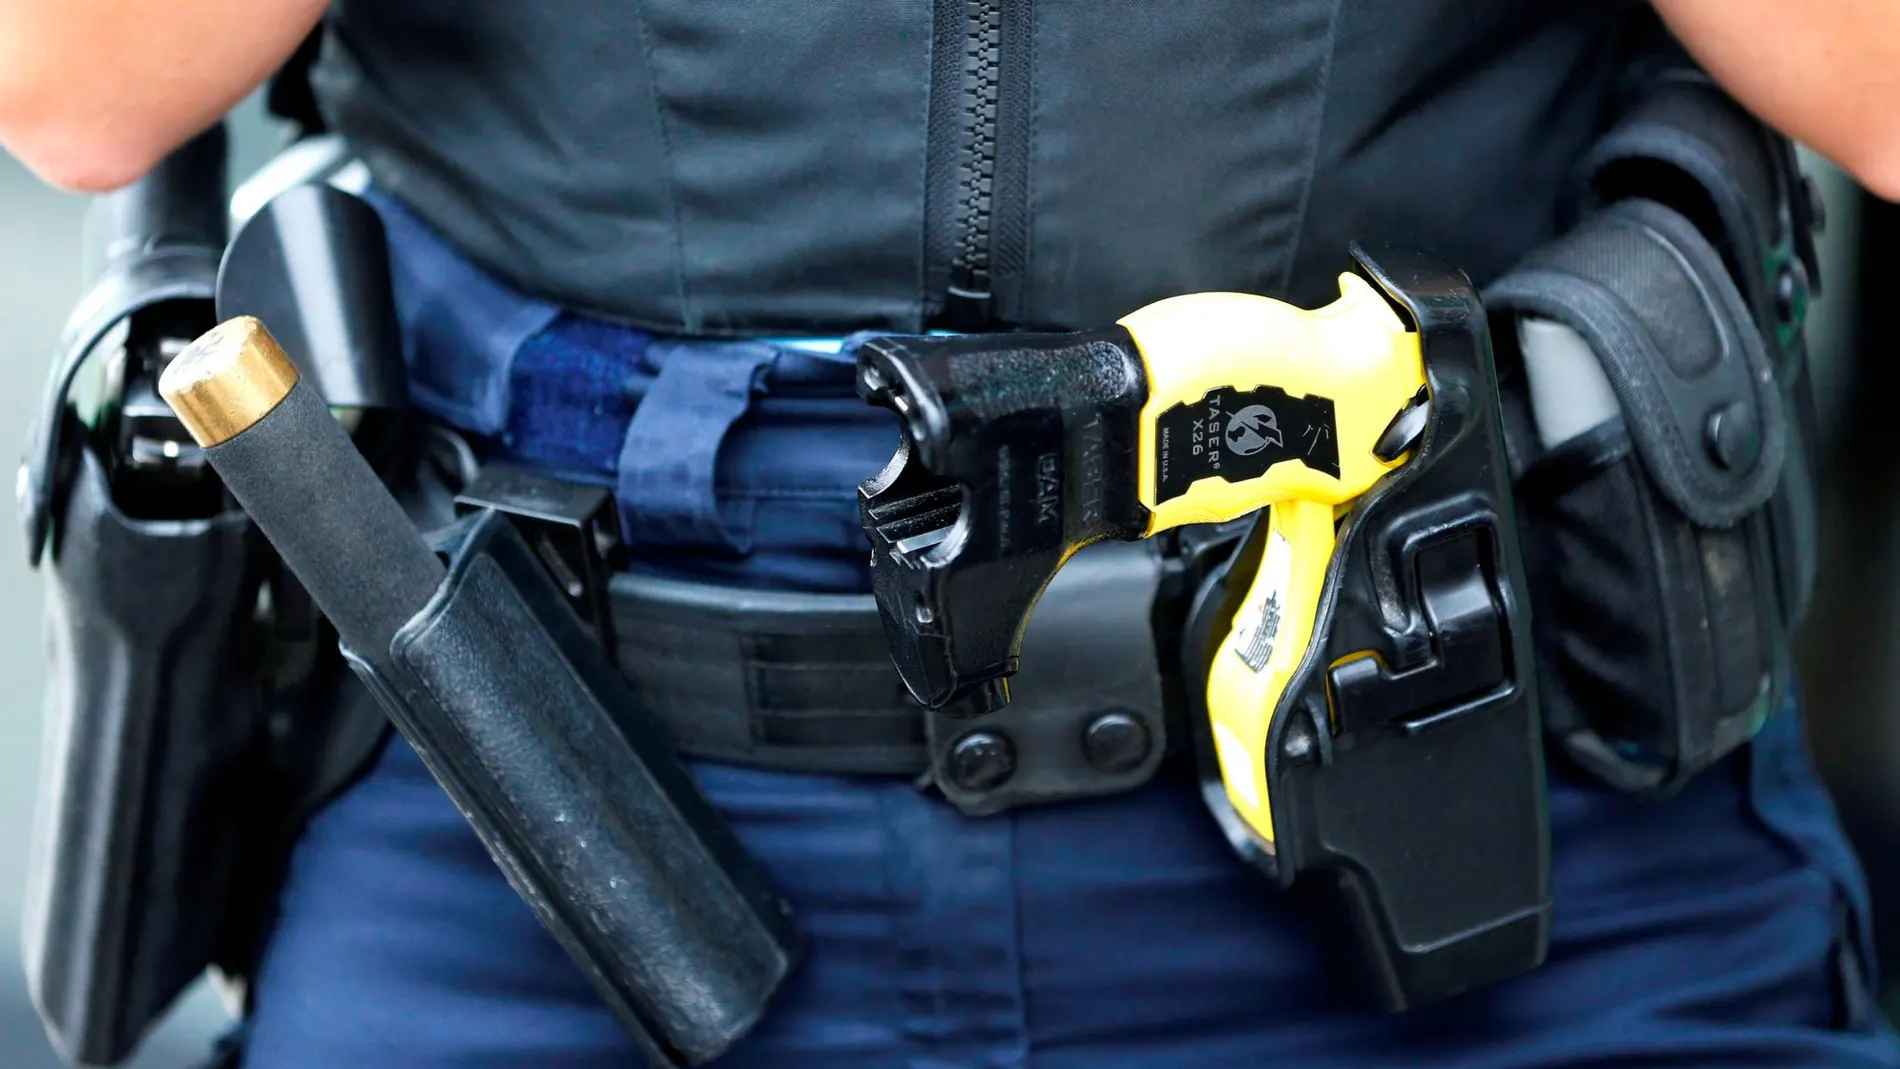 Pistola eléctrica táser en el cinturón de un policía - Archivo